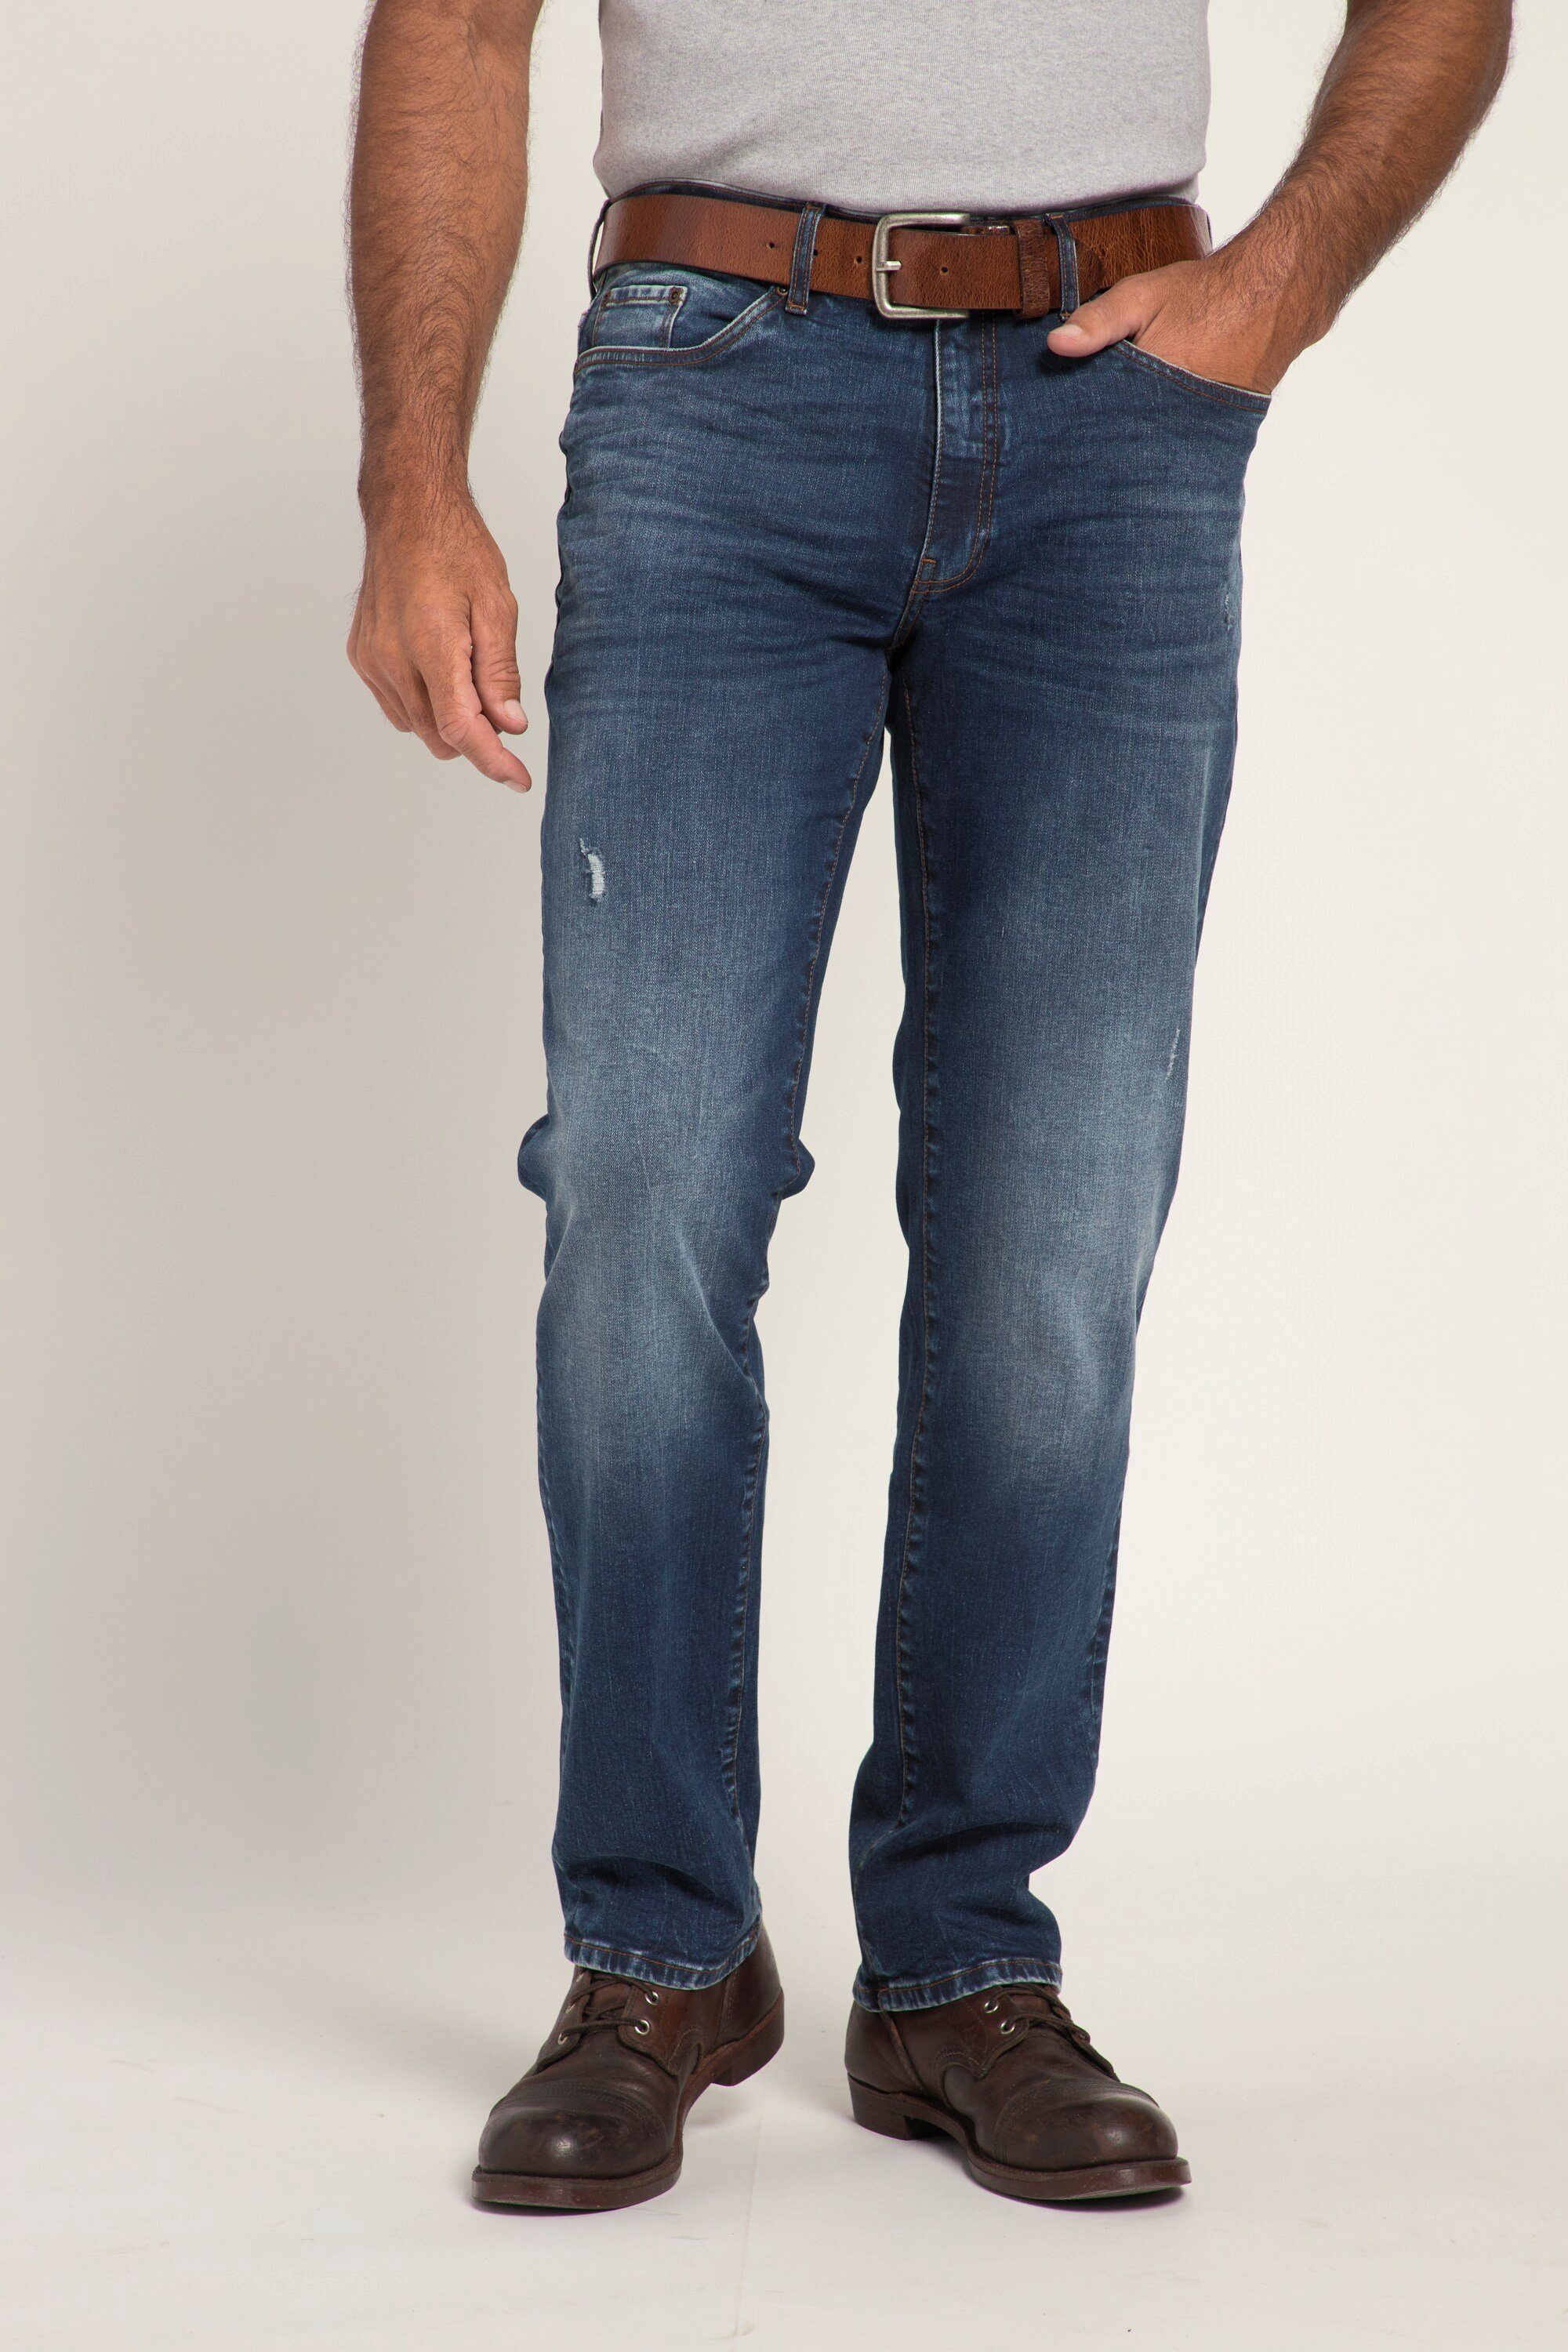 Jeans Look Denim FLEXNAMIC® denim 5-Pocket-Jeans blue Regular Vintage dark Fit JP1880